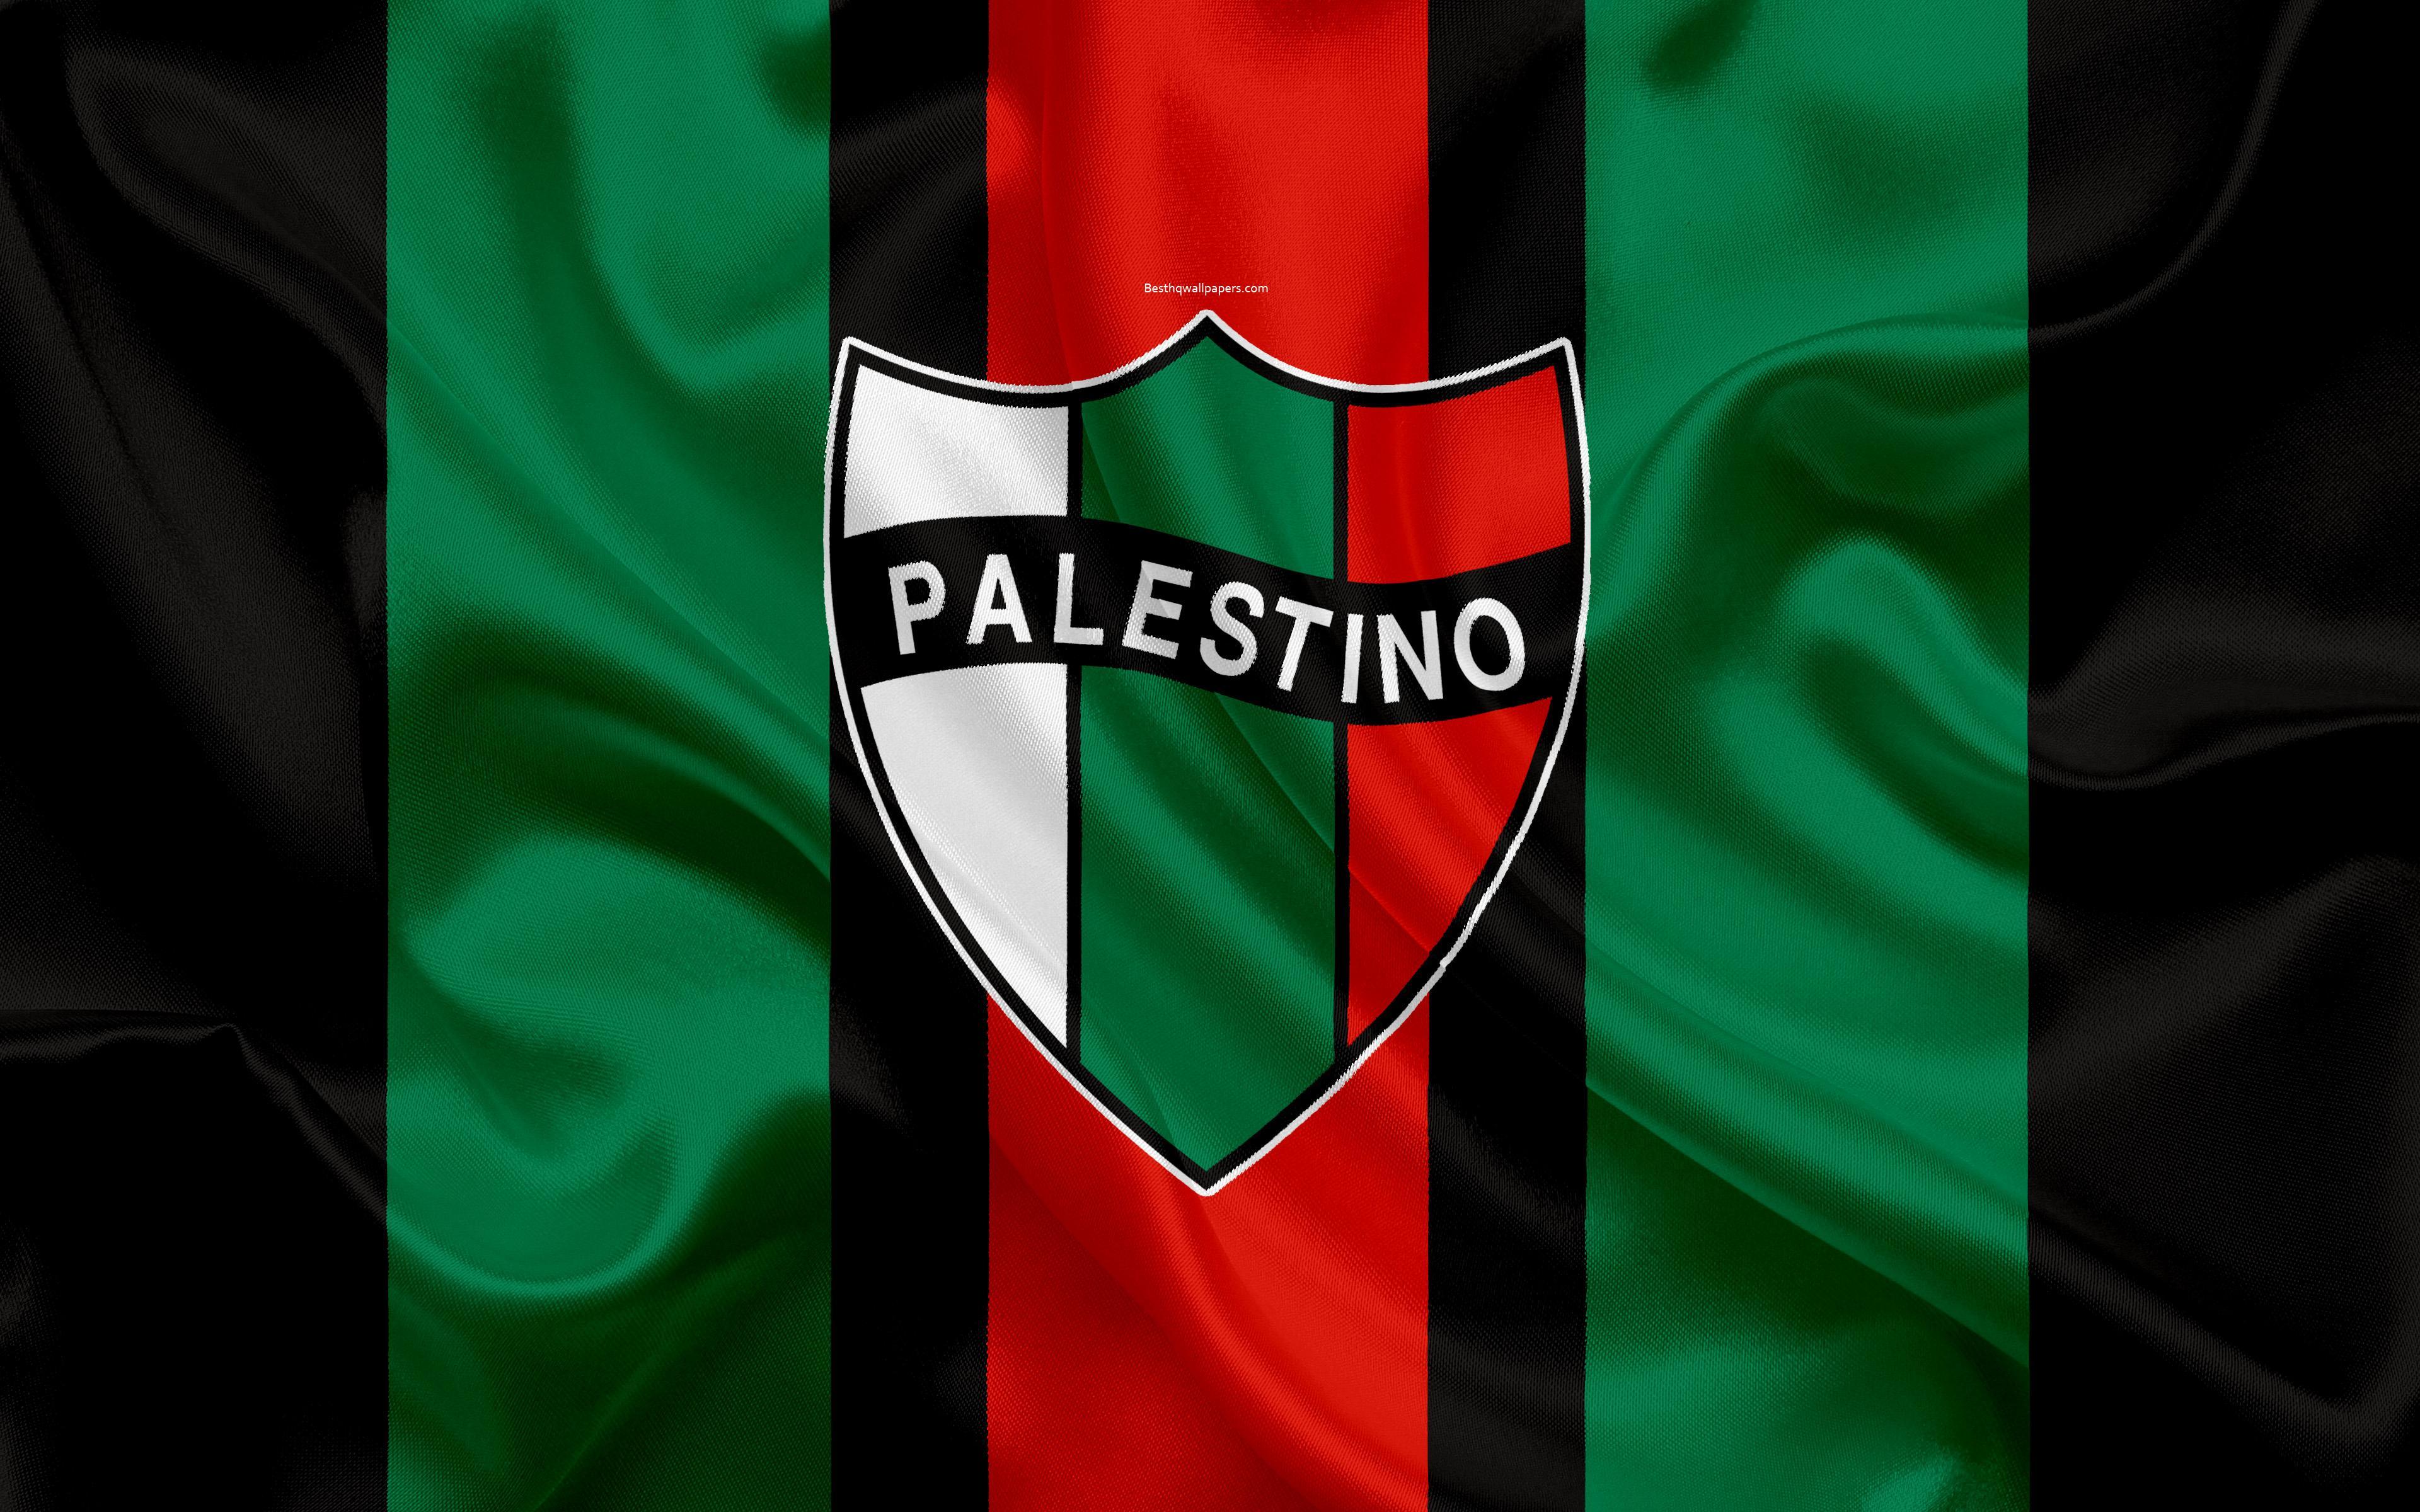 باشگاه ورزشی پالستینو (Club Deportivo Palestino)